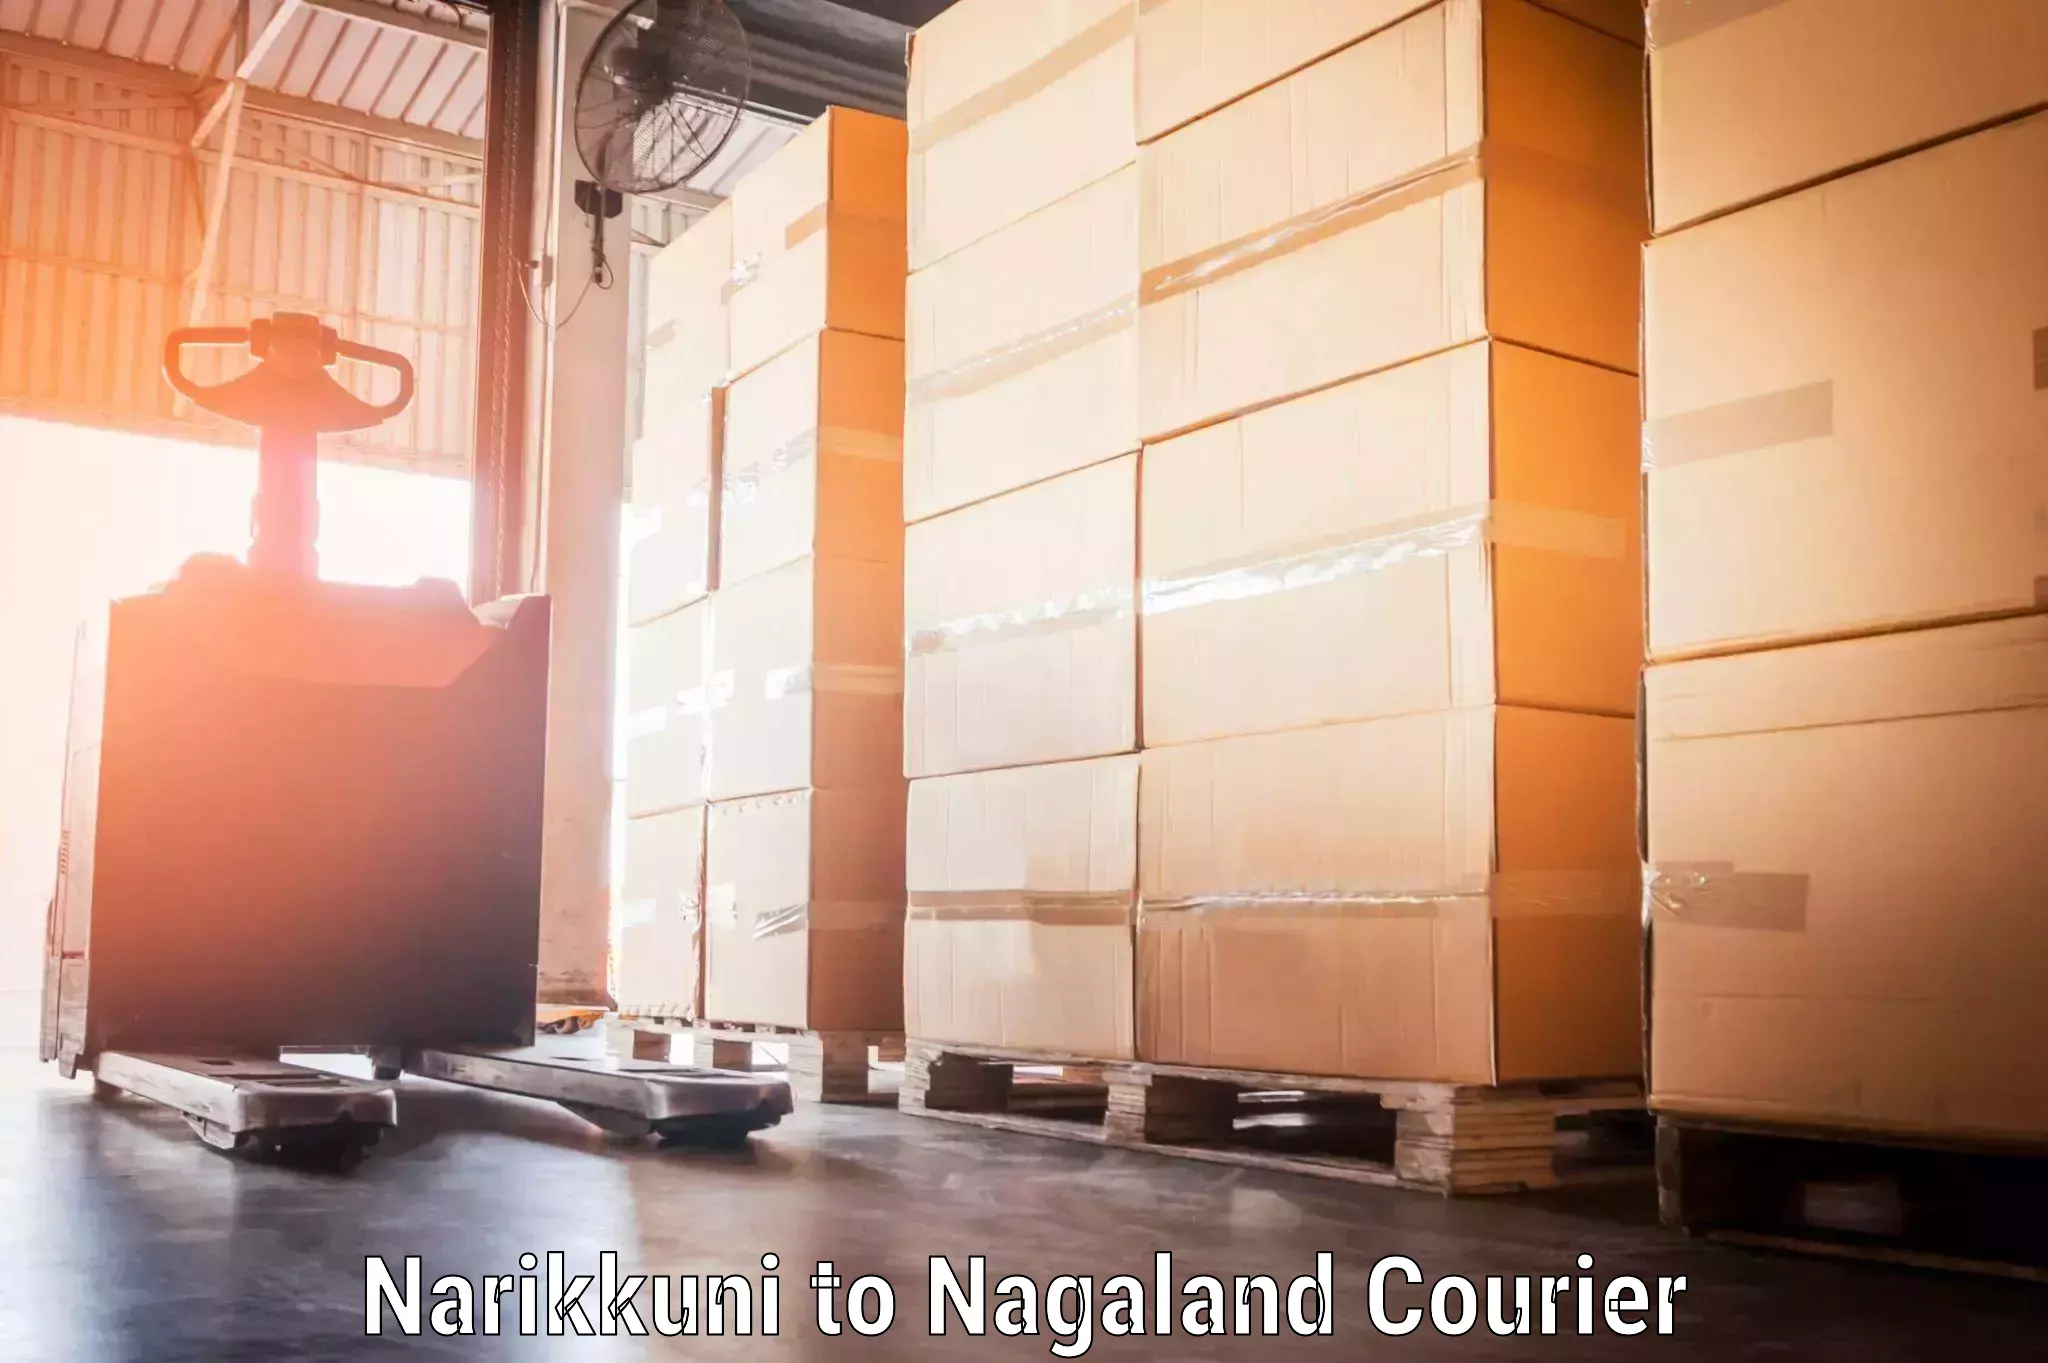 Luggage forwarding service Narikkuni to Nagaland